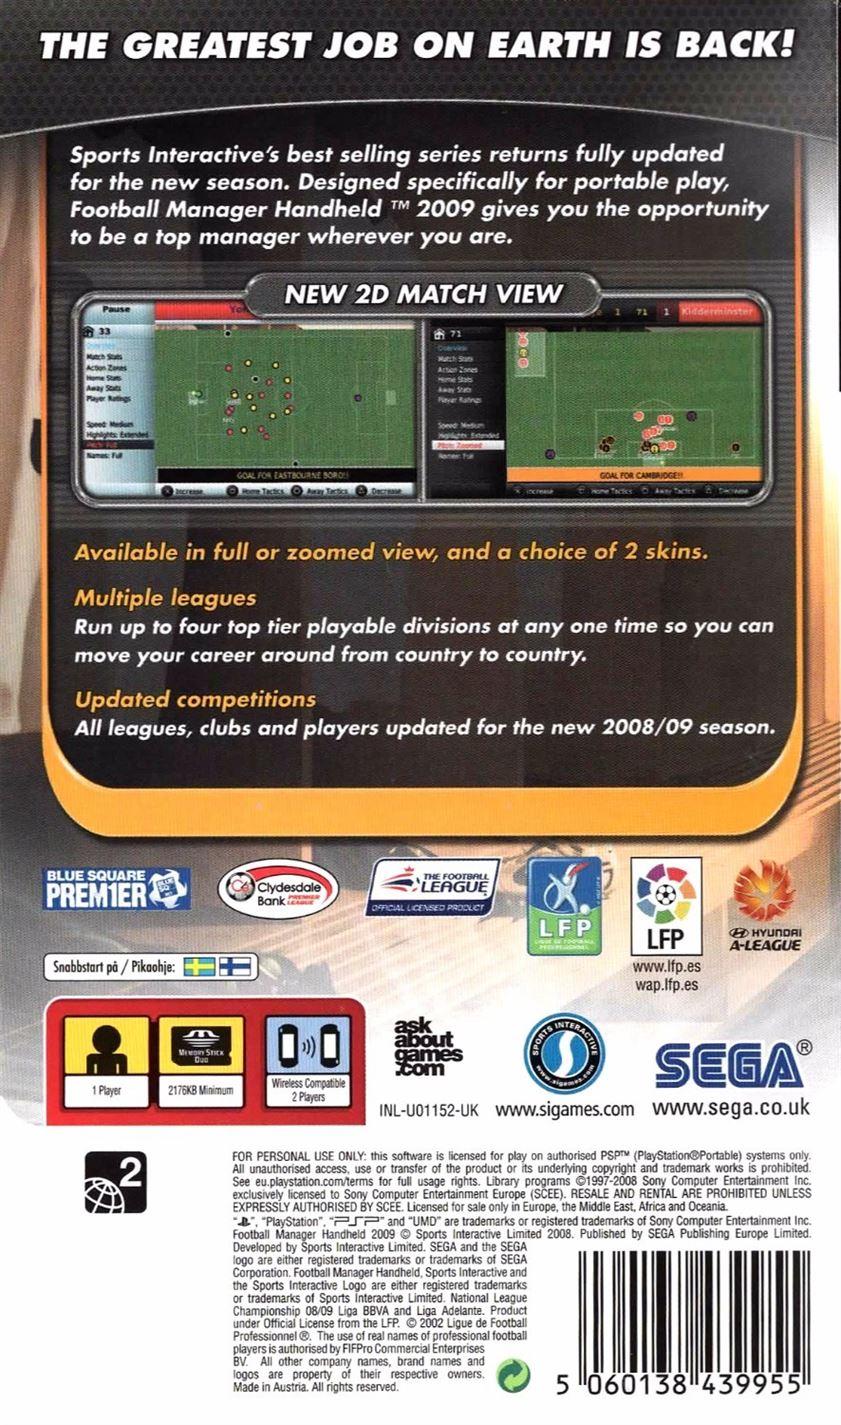 Football Manager Handheld 2009 (PSP) - UK Seller